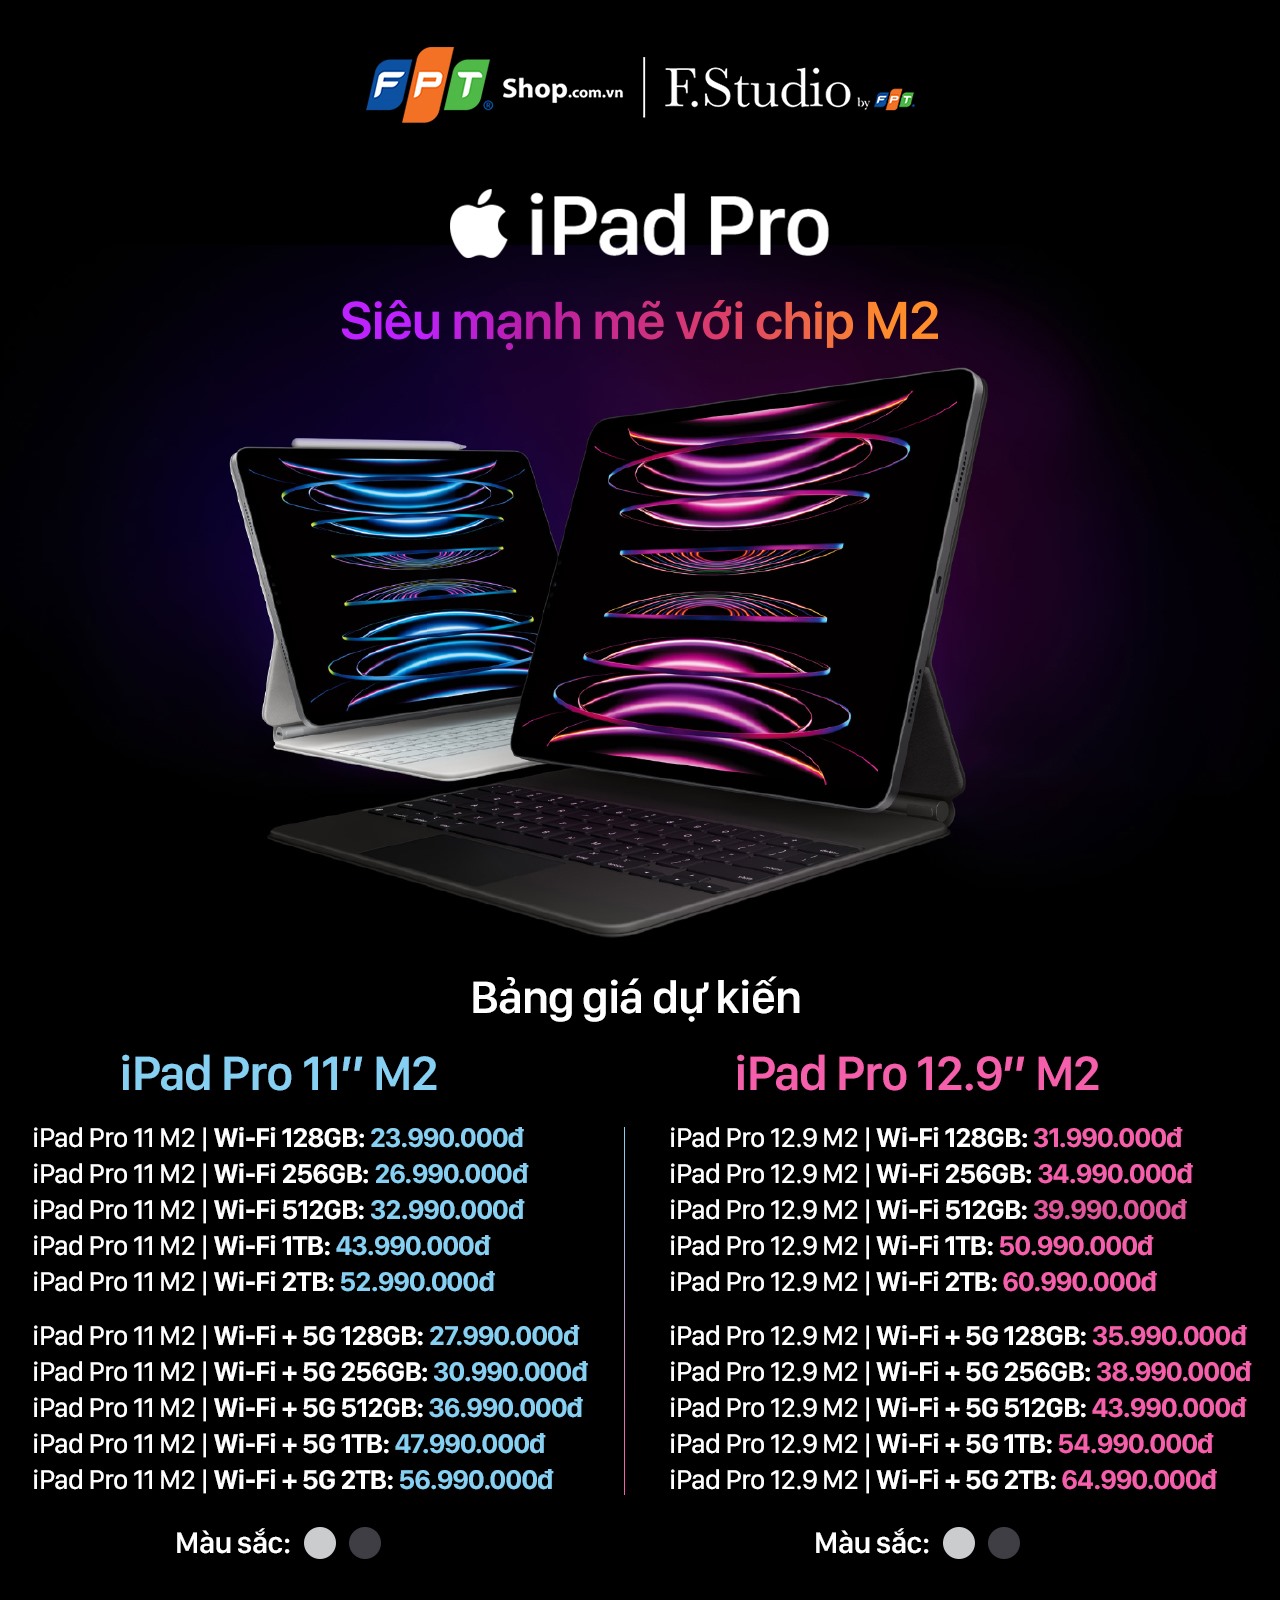 iPad Gen 10 và iPad Pro 2022 là hai sản phẩm đáng chú ý trên thị trường. Một số tính năng mới và cải tiến đã được cập nhật đến hai loại iPad này. Hãy truy cập vào hình ảnh của chúng tôi để tìm hiểu thêm về những tính năng này và giá bán của chúng, để bạn có thể chọn đúng loại máy tính bảng phù hợp.